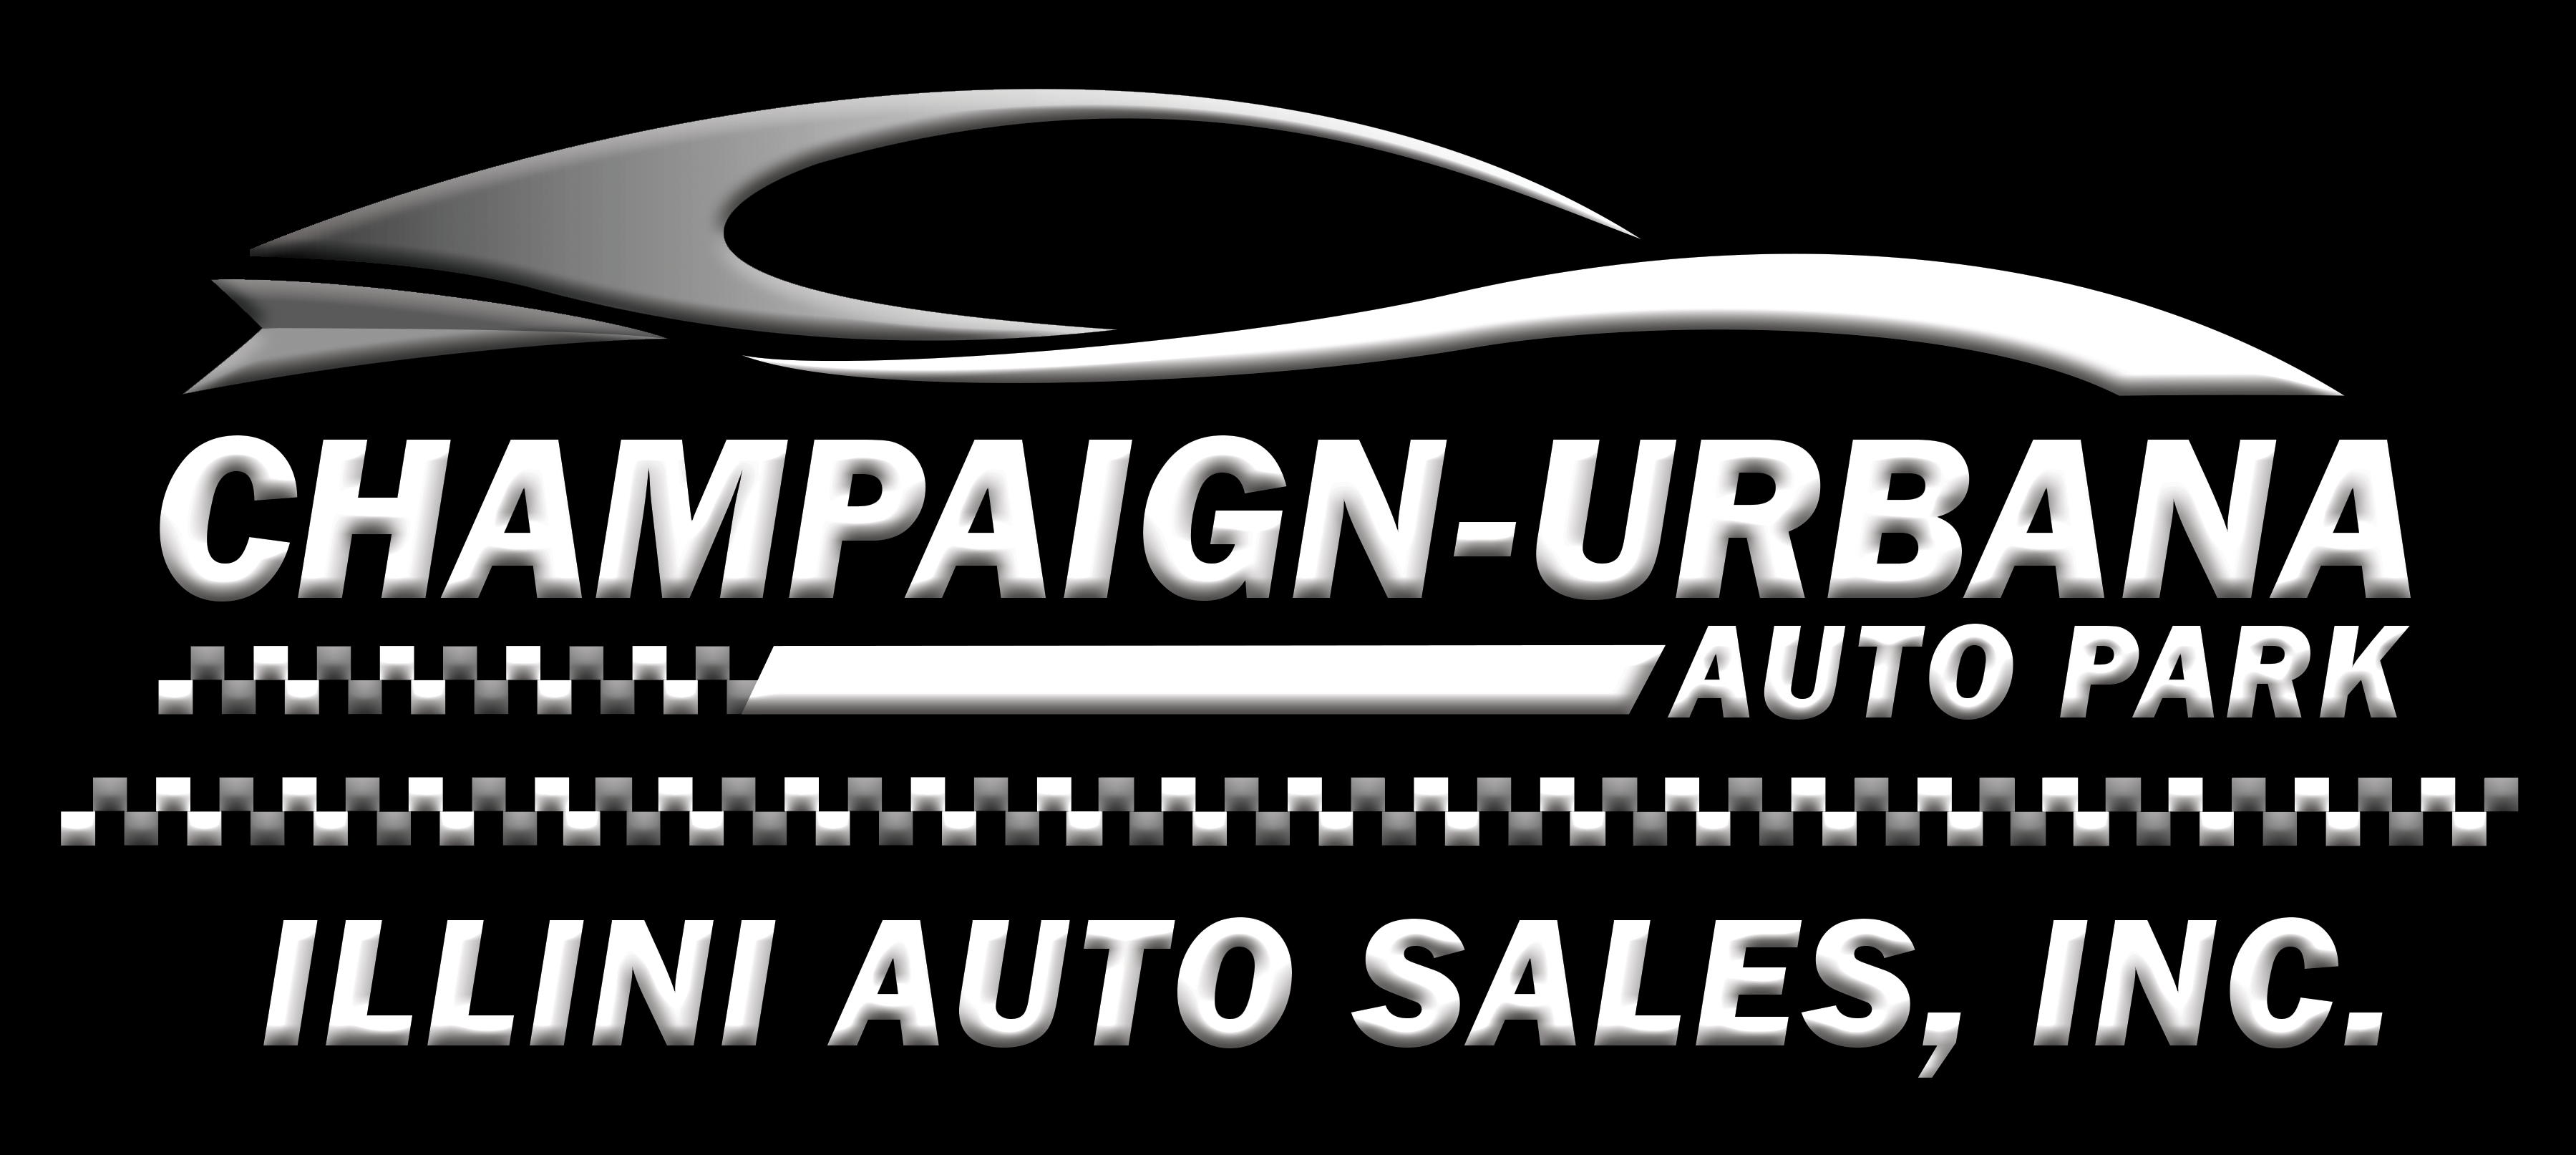 Champaign-Urbana Auto Park – Illini Auto Sales